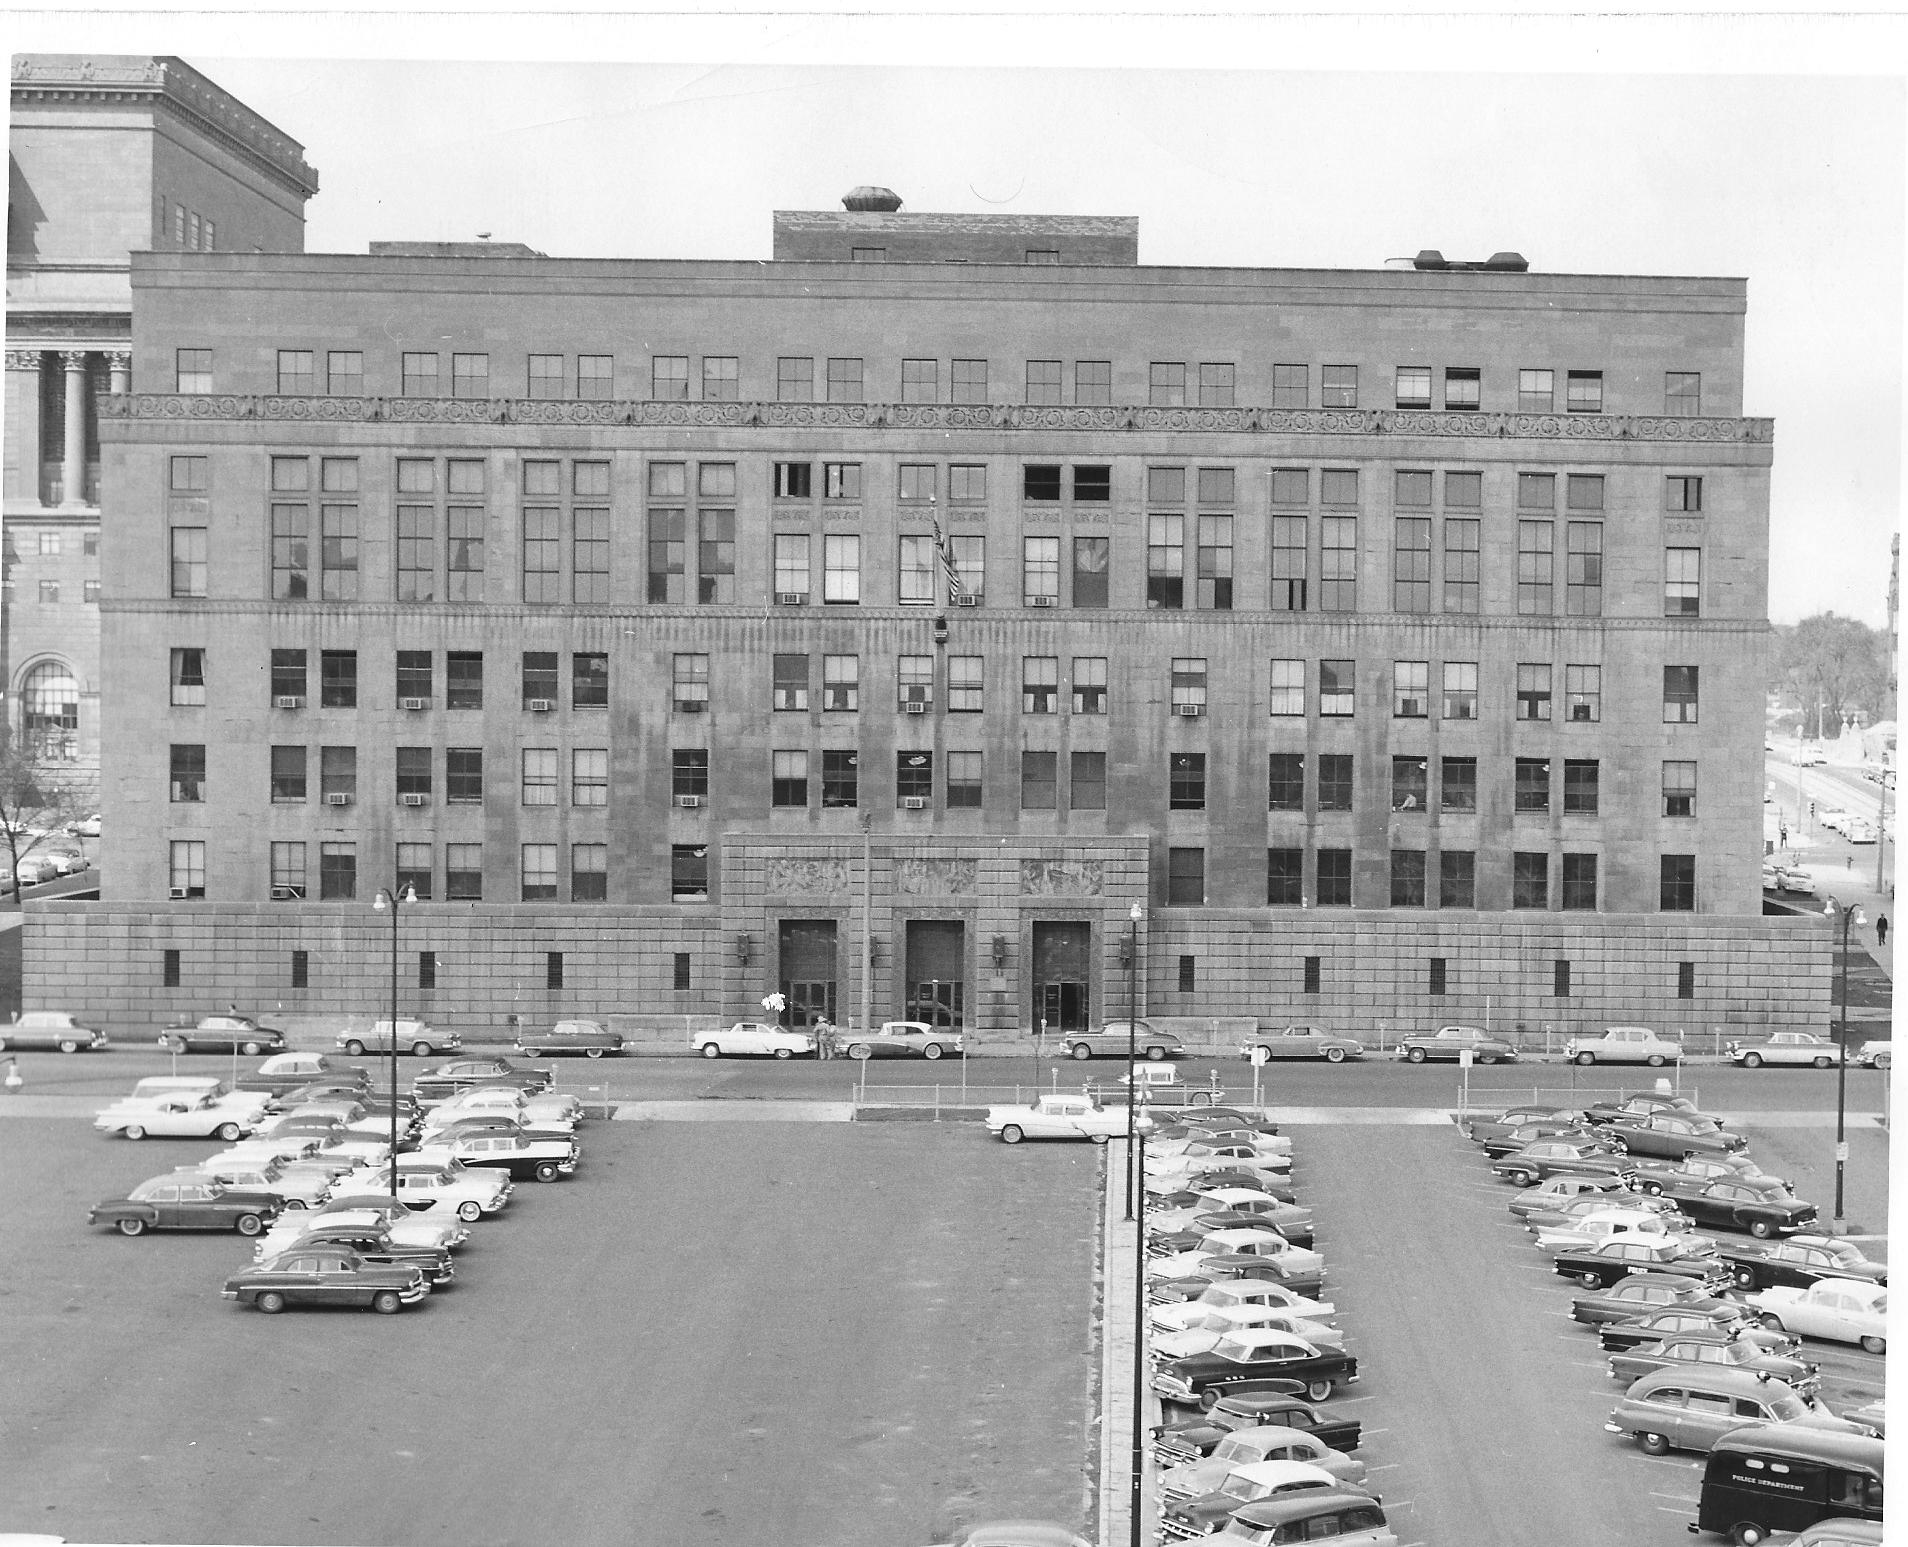 Safety Building circa 1957